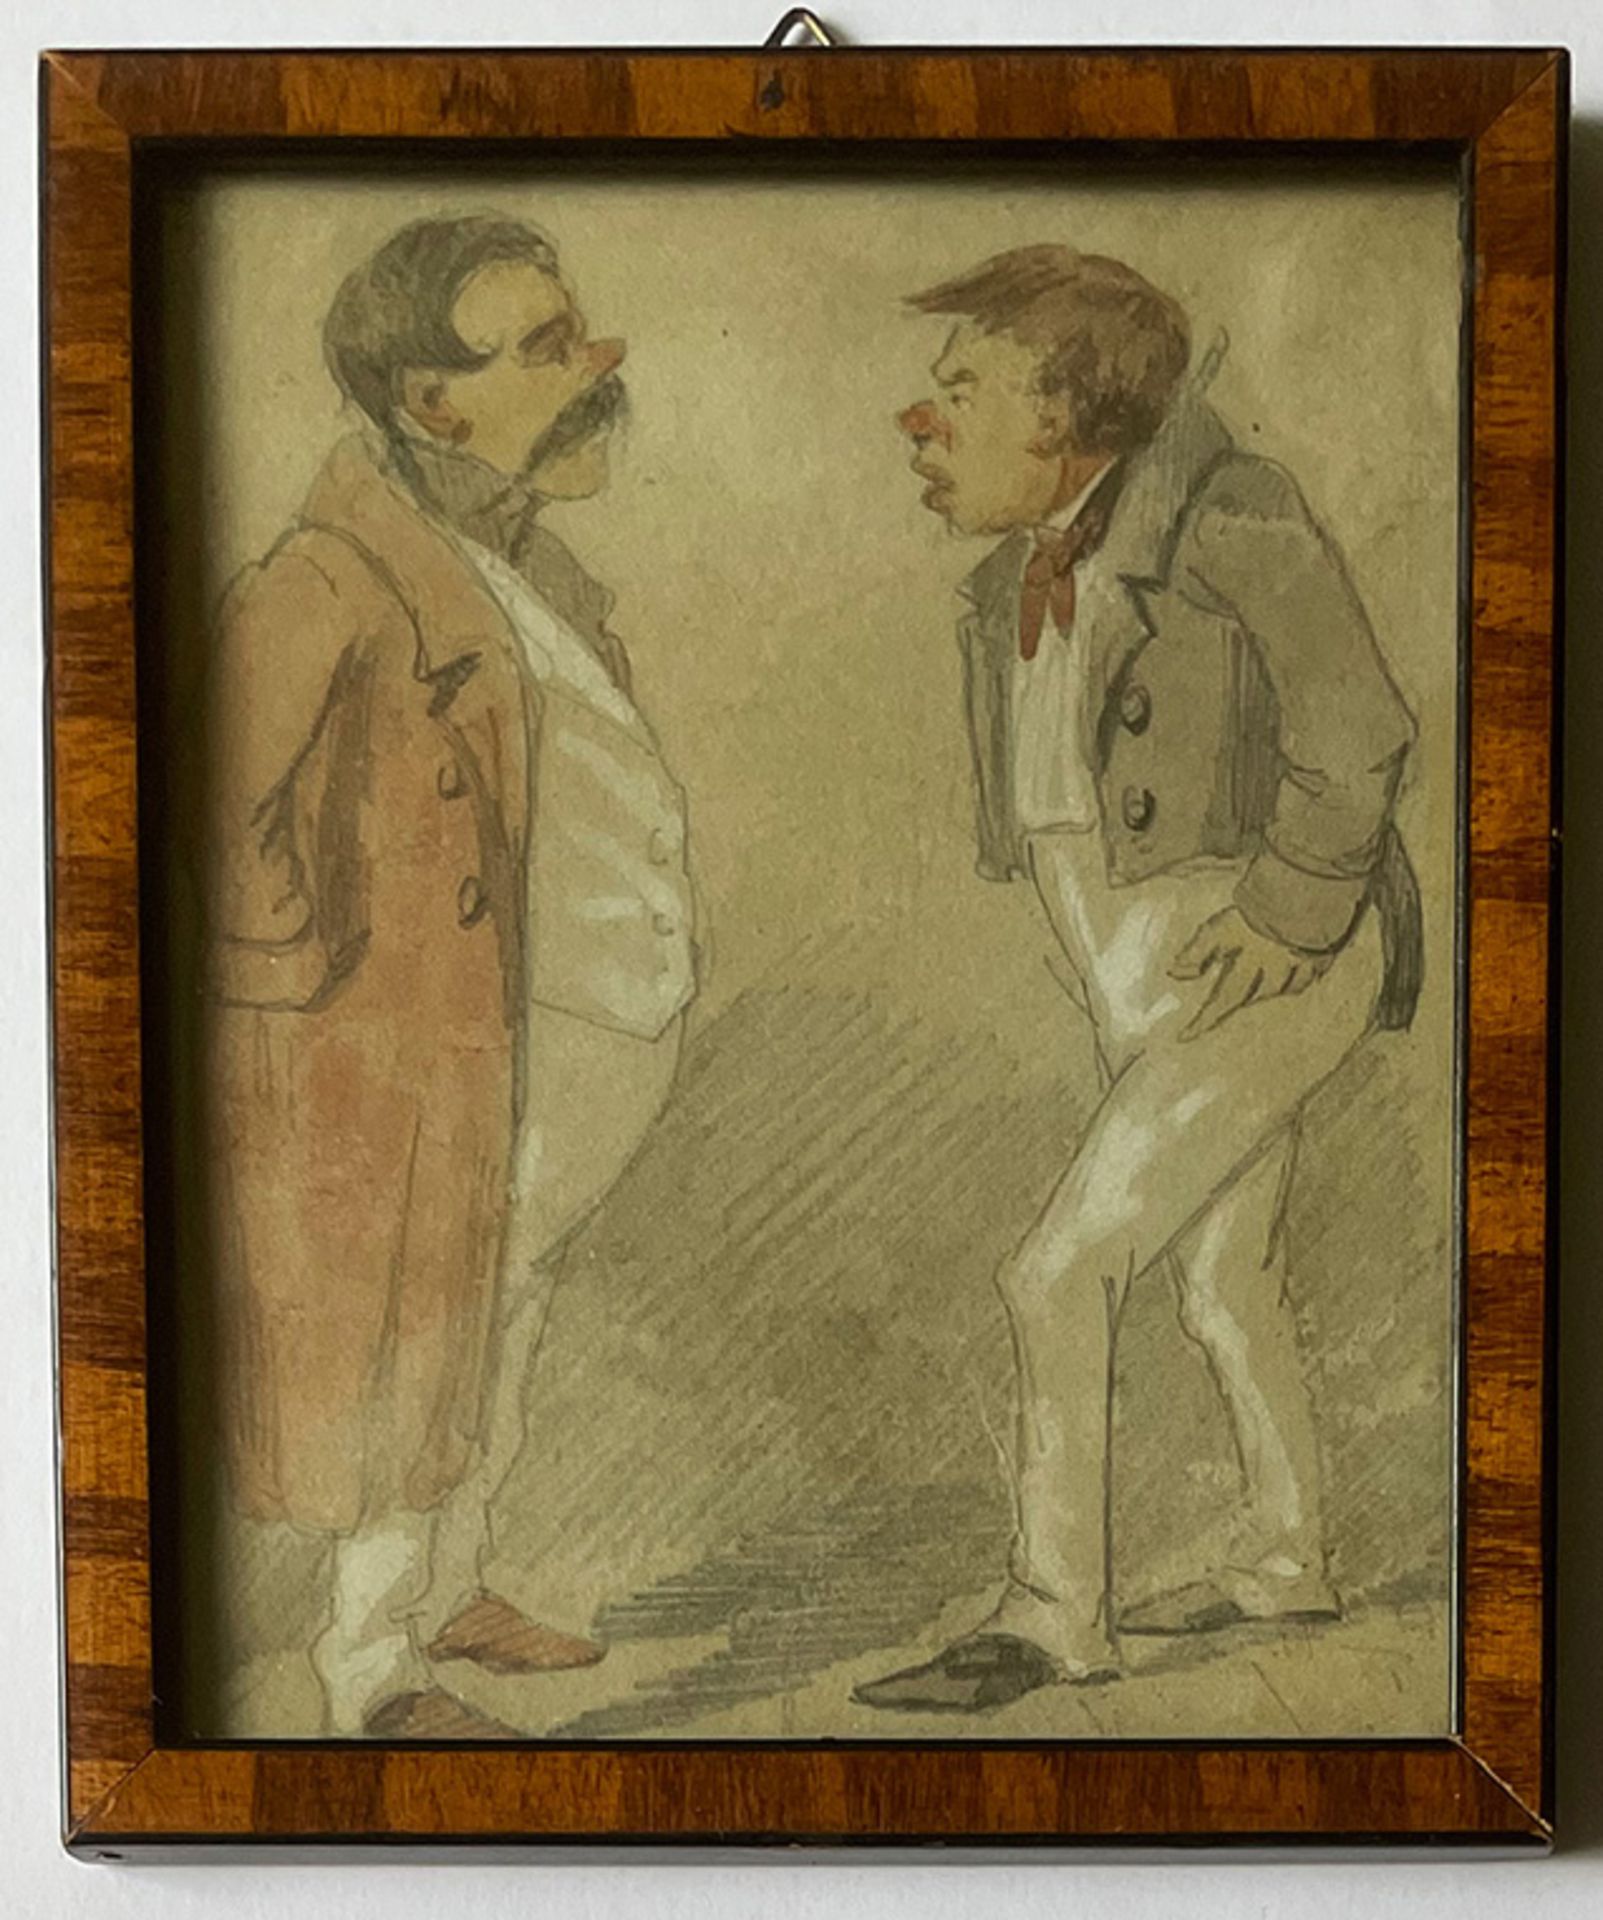 Unbekannter Künstler, 19. Jh., 2 Männer im Streit, beide mit Rotweinnasen, Zeichnung, mit Rahmen - Bild 2 aus 3